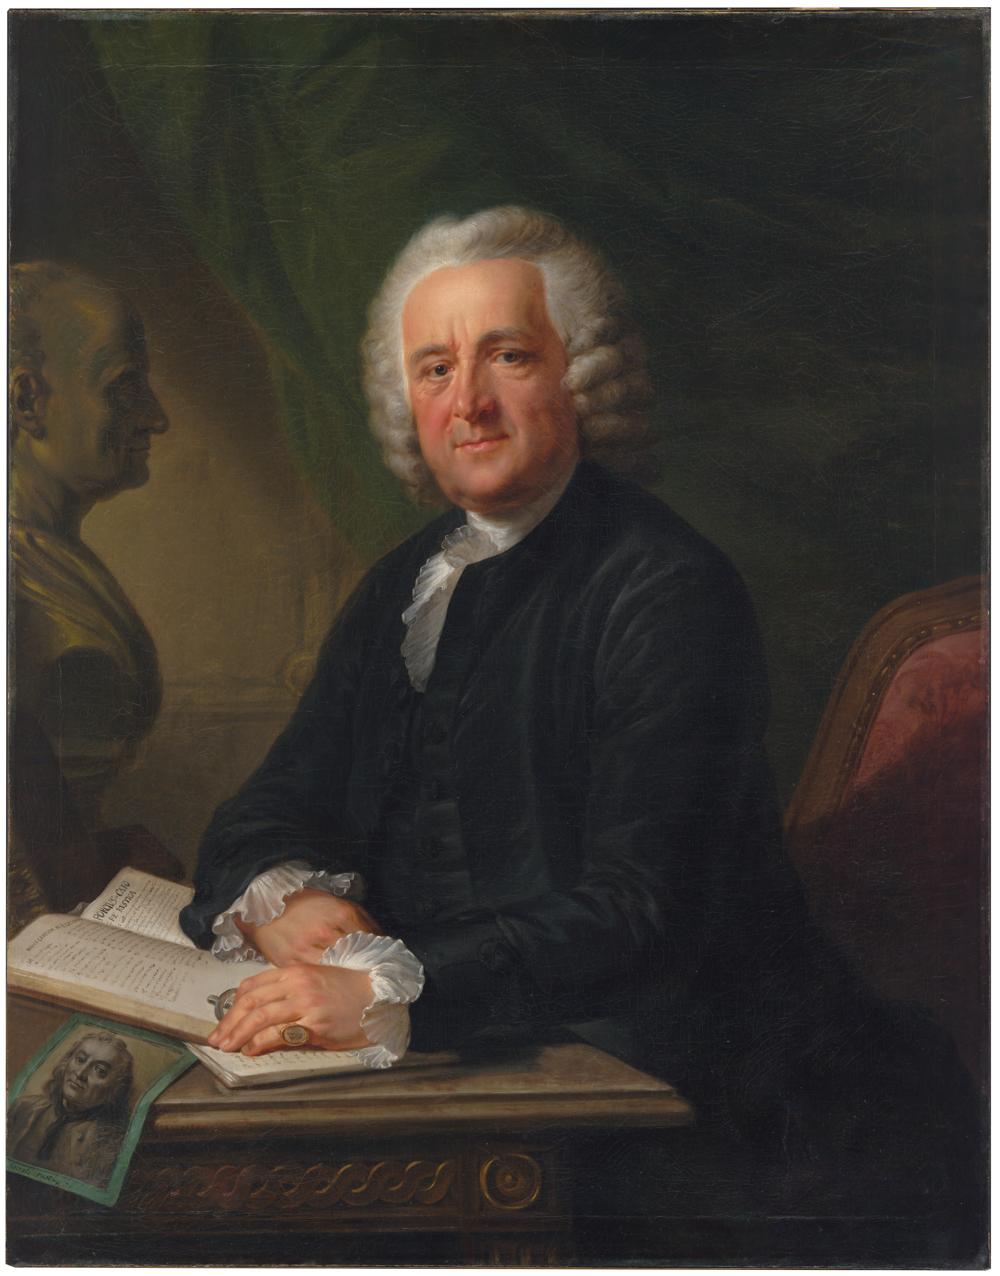 Porträt des Stadtarztes Hans Caspar Hirzel (1725-1803) von Friedrich Oelenhainz (1745-1804), 1790. (ZB, Inv 173)